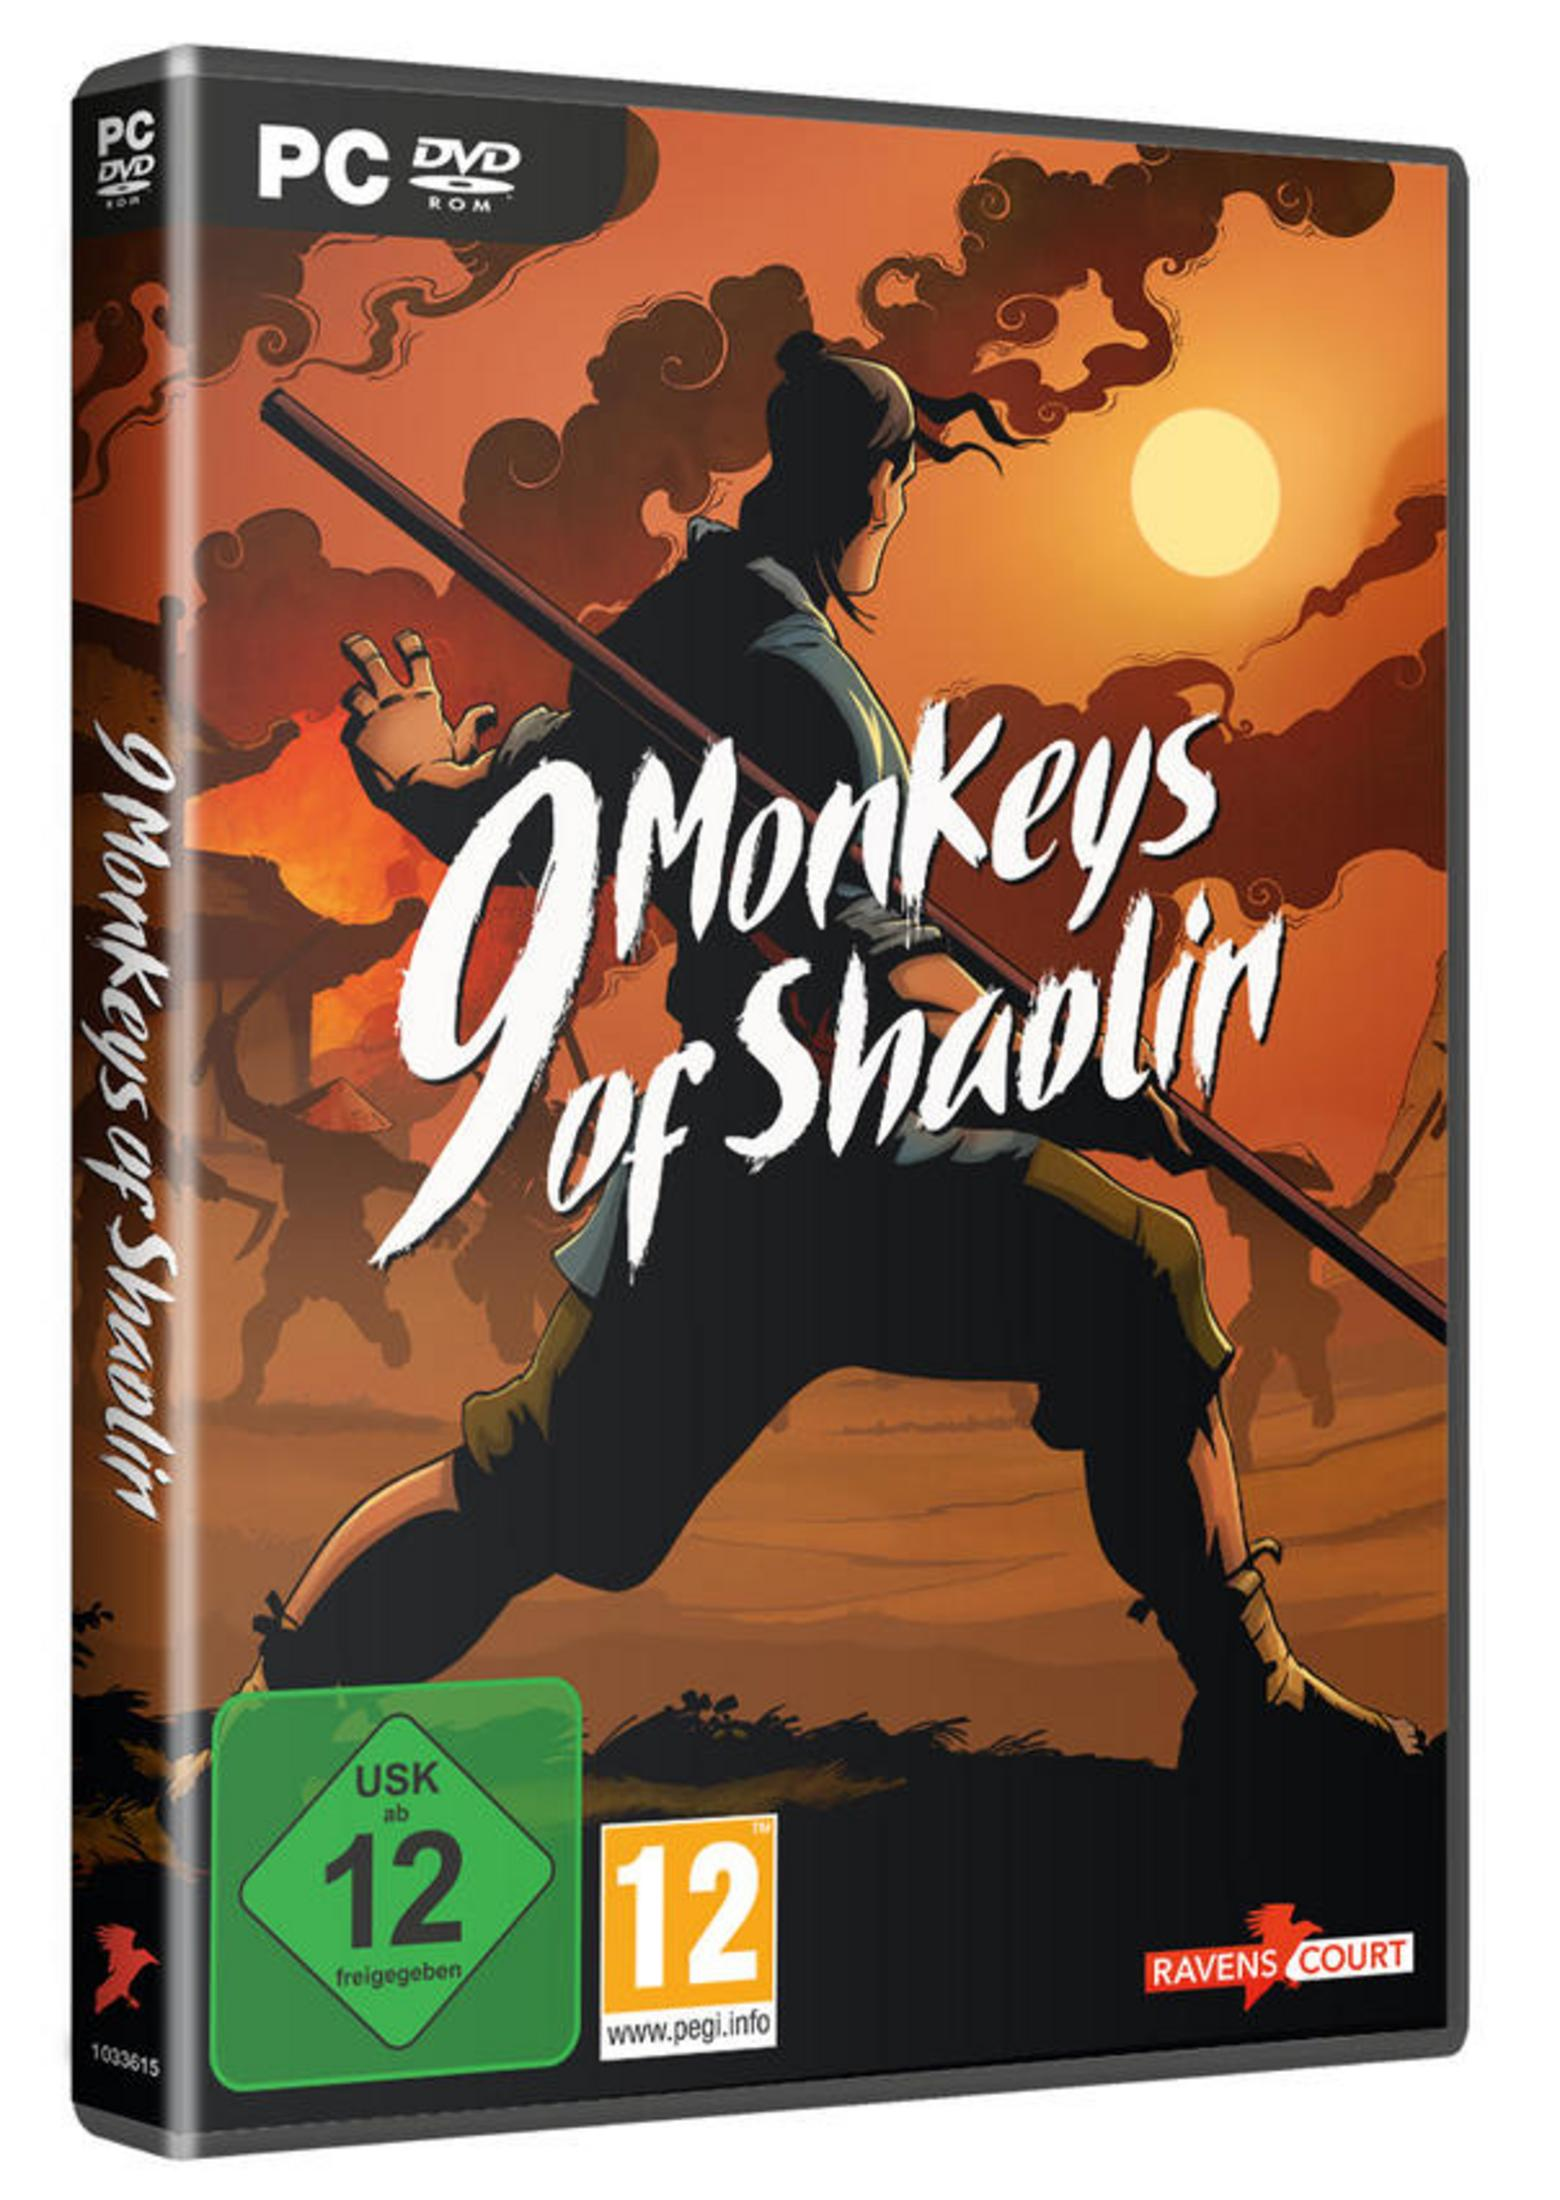 - 9 Monkeys of Shaolin [PC]